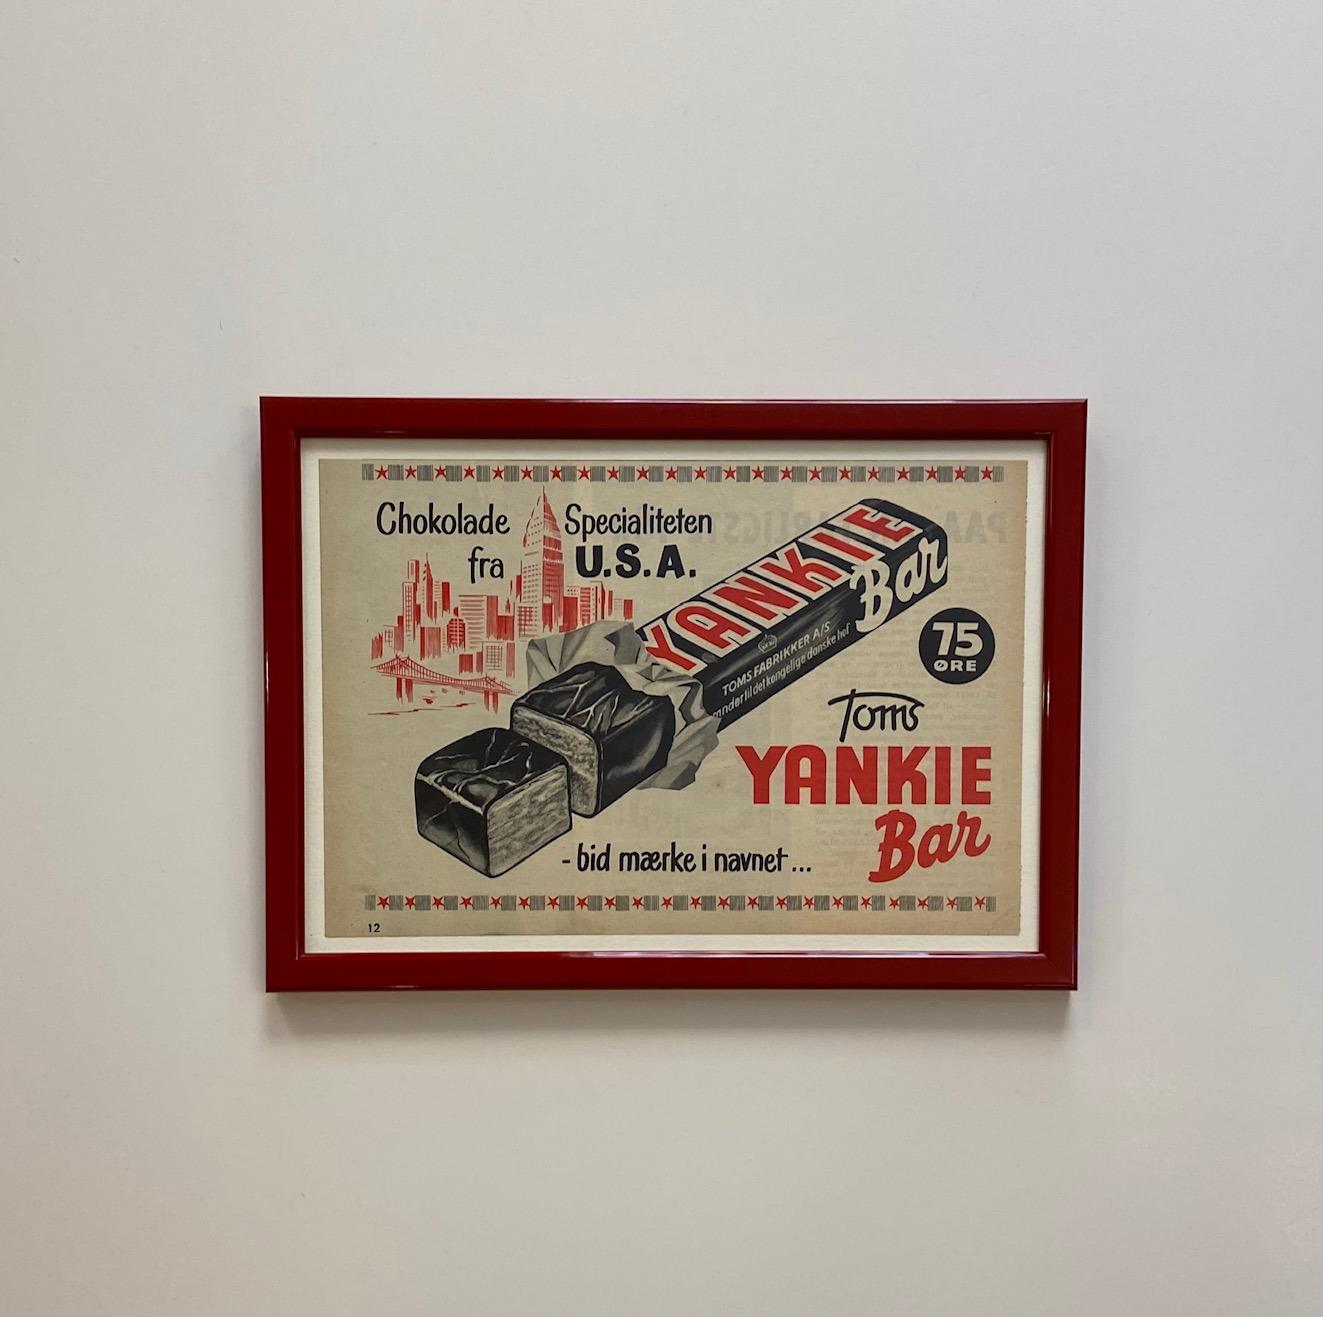 Bar - Reklame fra 1956 - Frøde